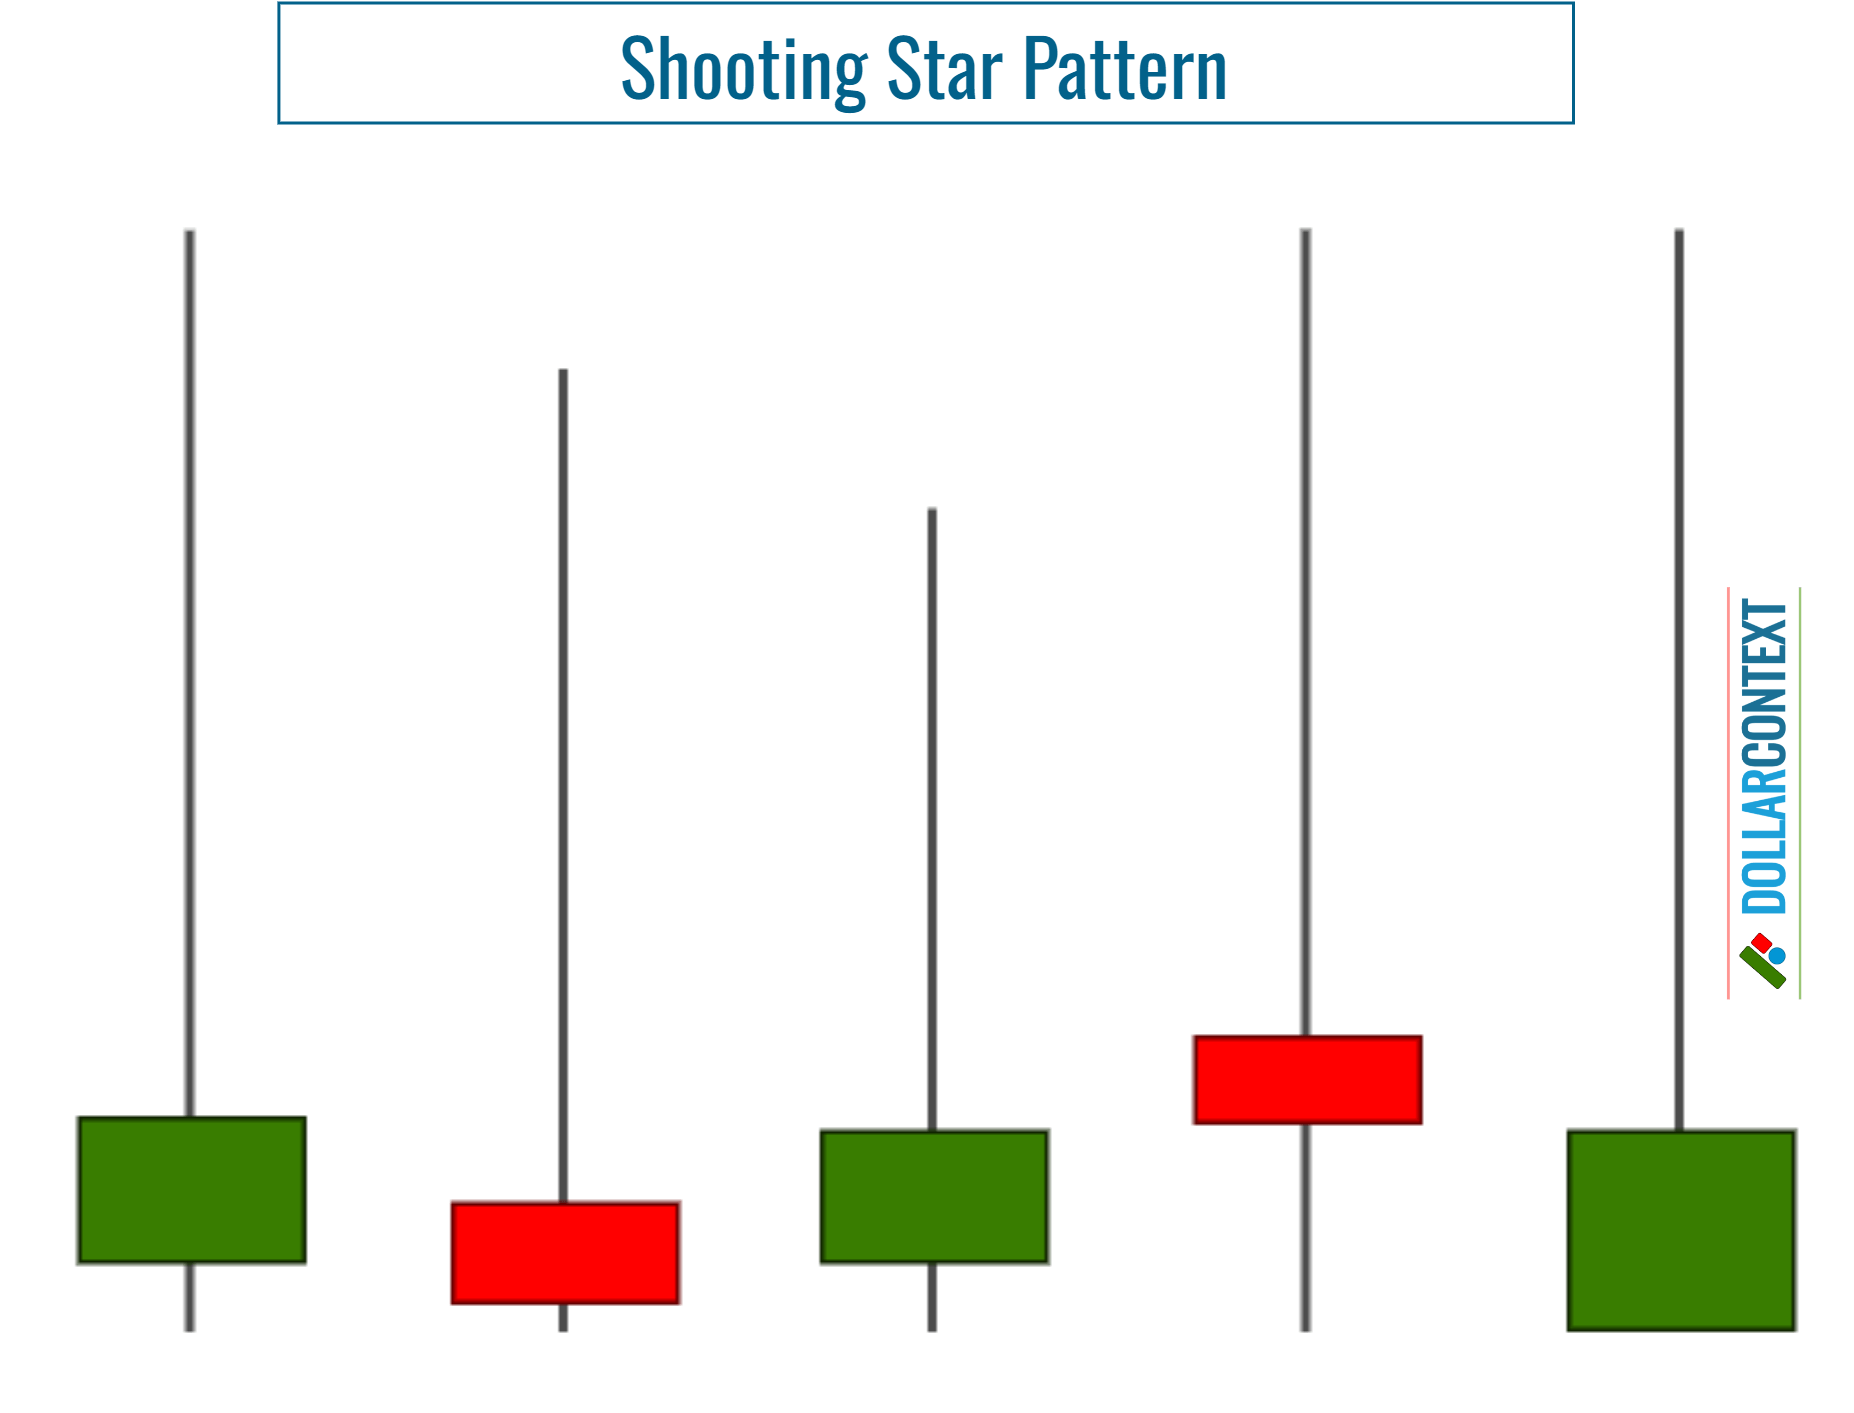 Doji vs. Shooting Star